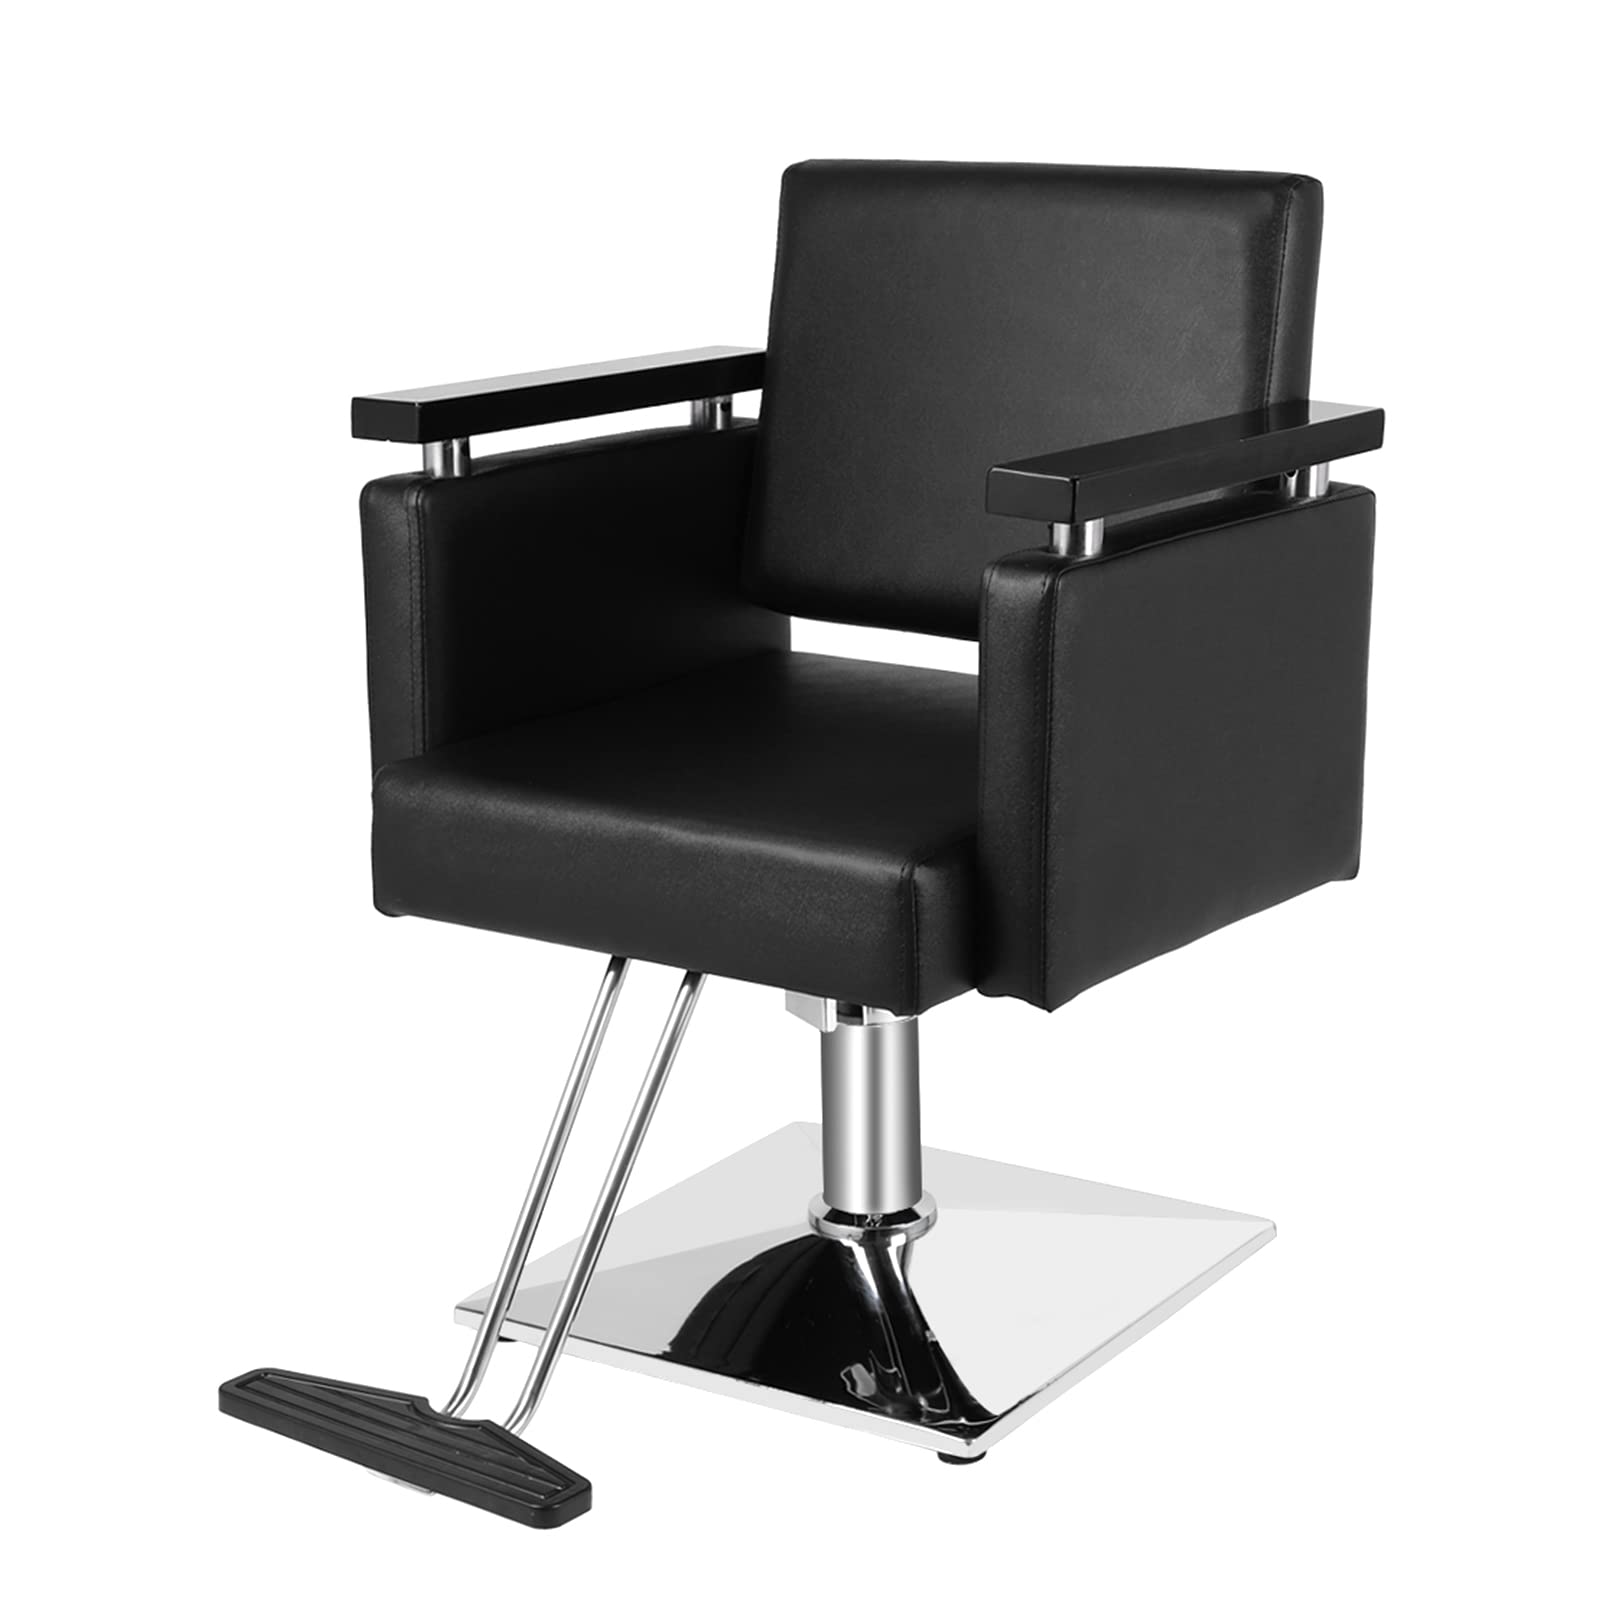 Omysalon Hydraulic 360-Degree Swivel Hair Stylist Salon Styling Chair